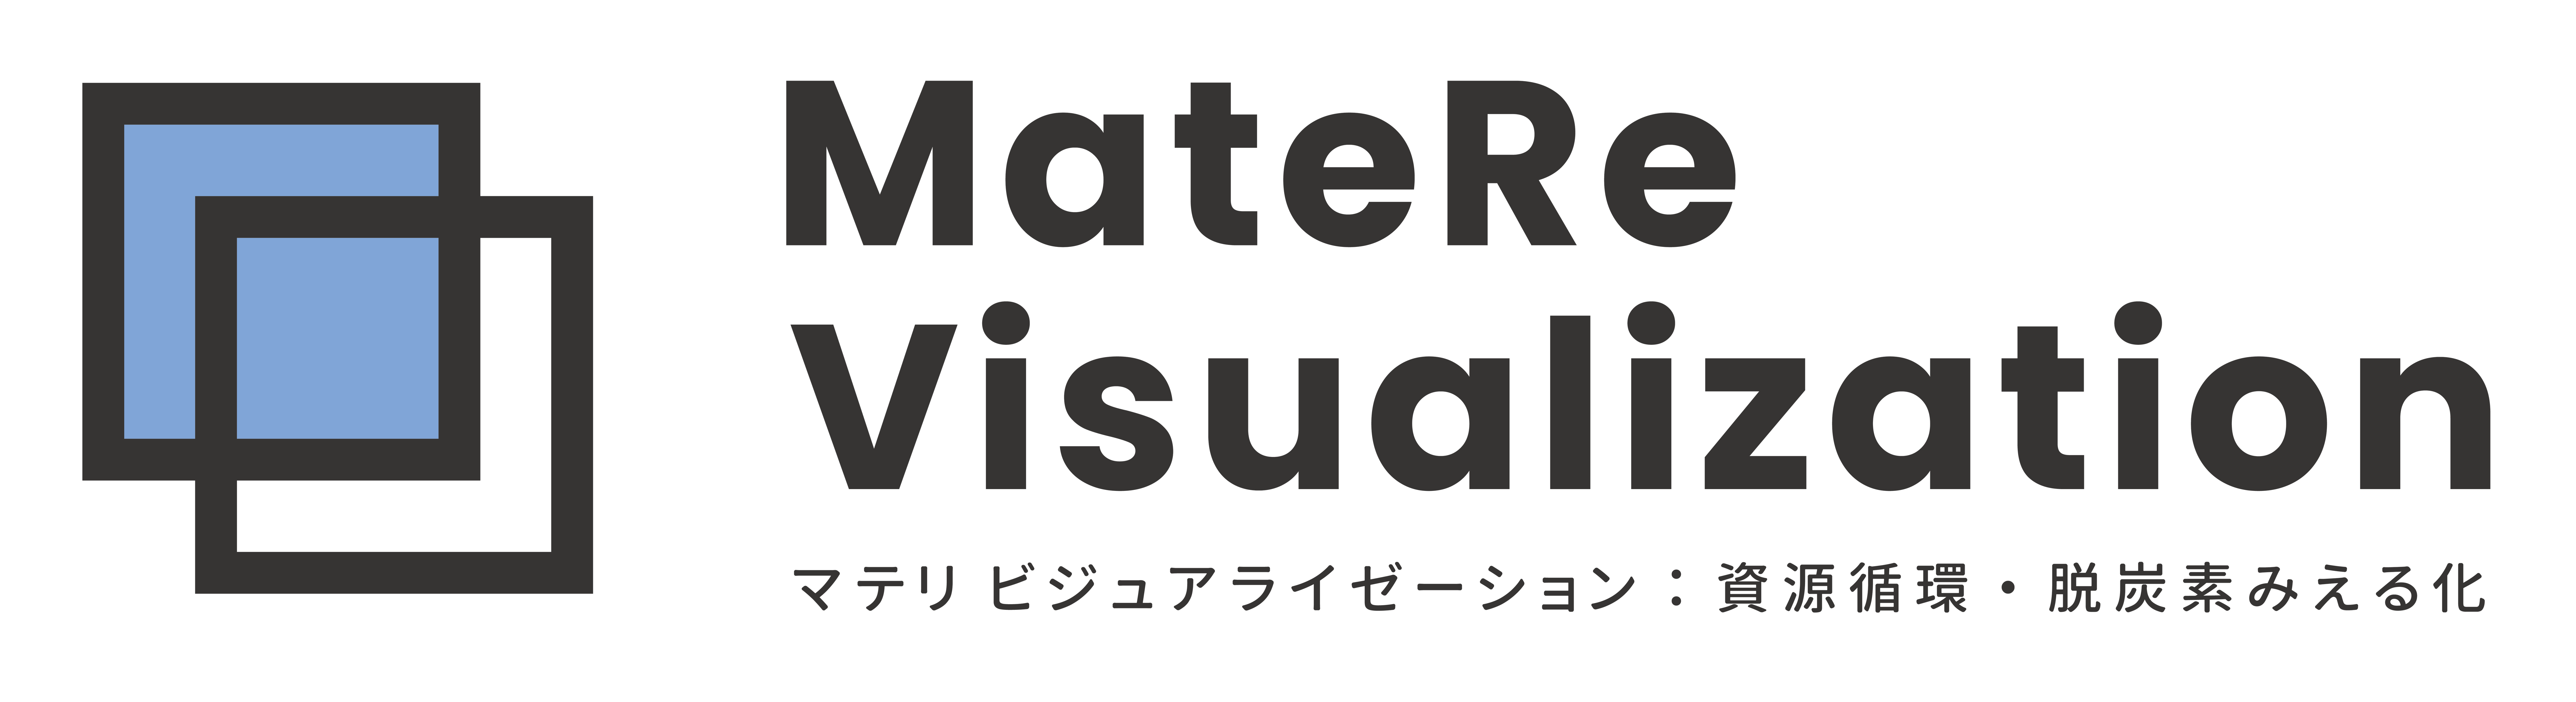 MatereV_logo1